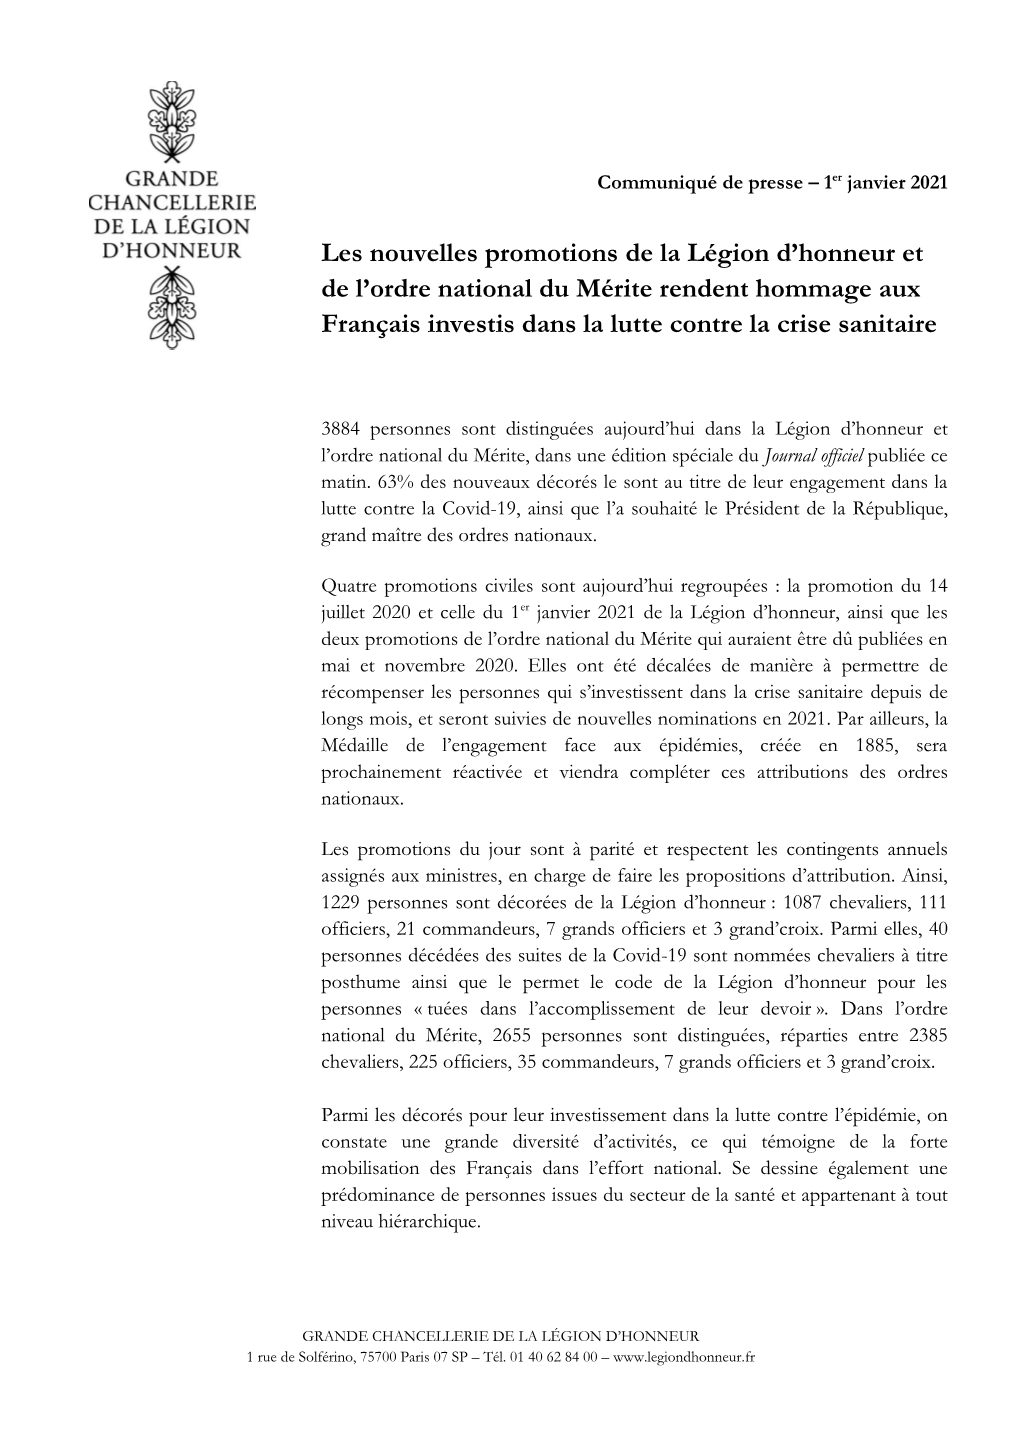 Ordre National Du Mérite Rendent Hommage Aux Français Investis Dans La Lutte Contre La Crise Sanitaire